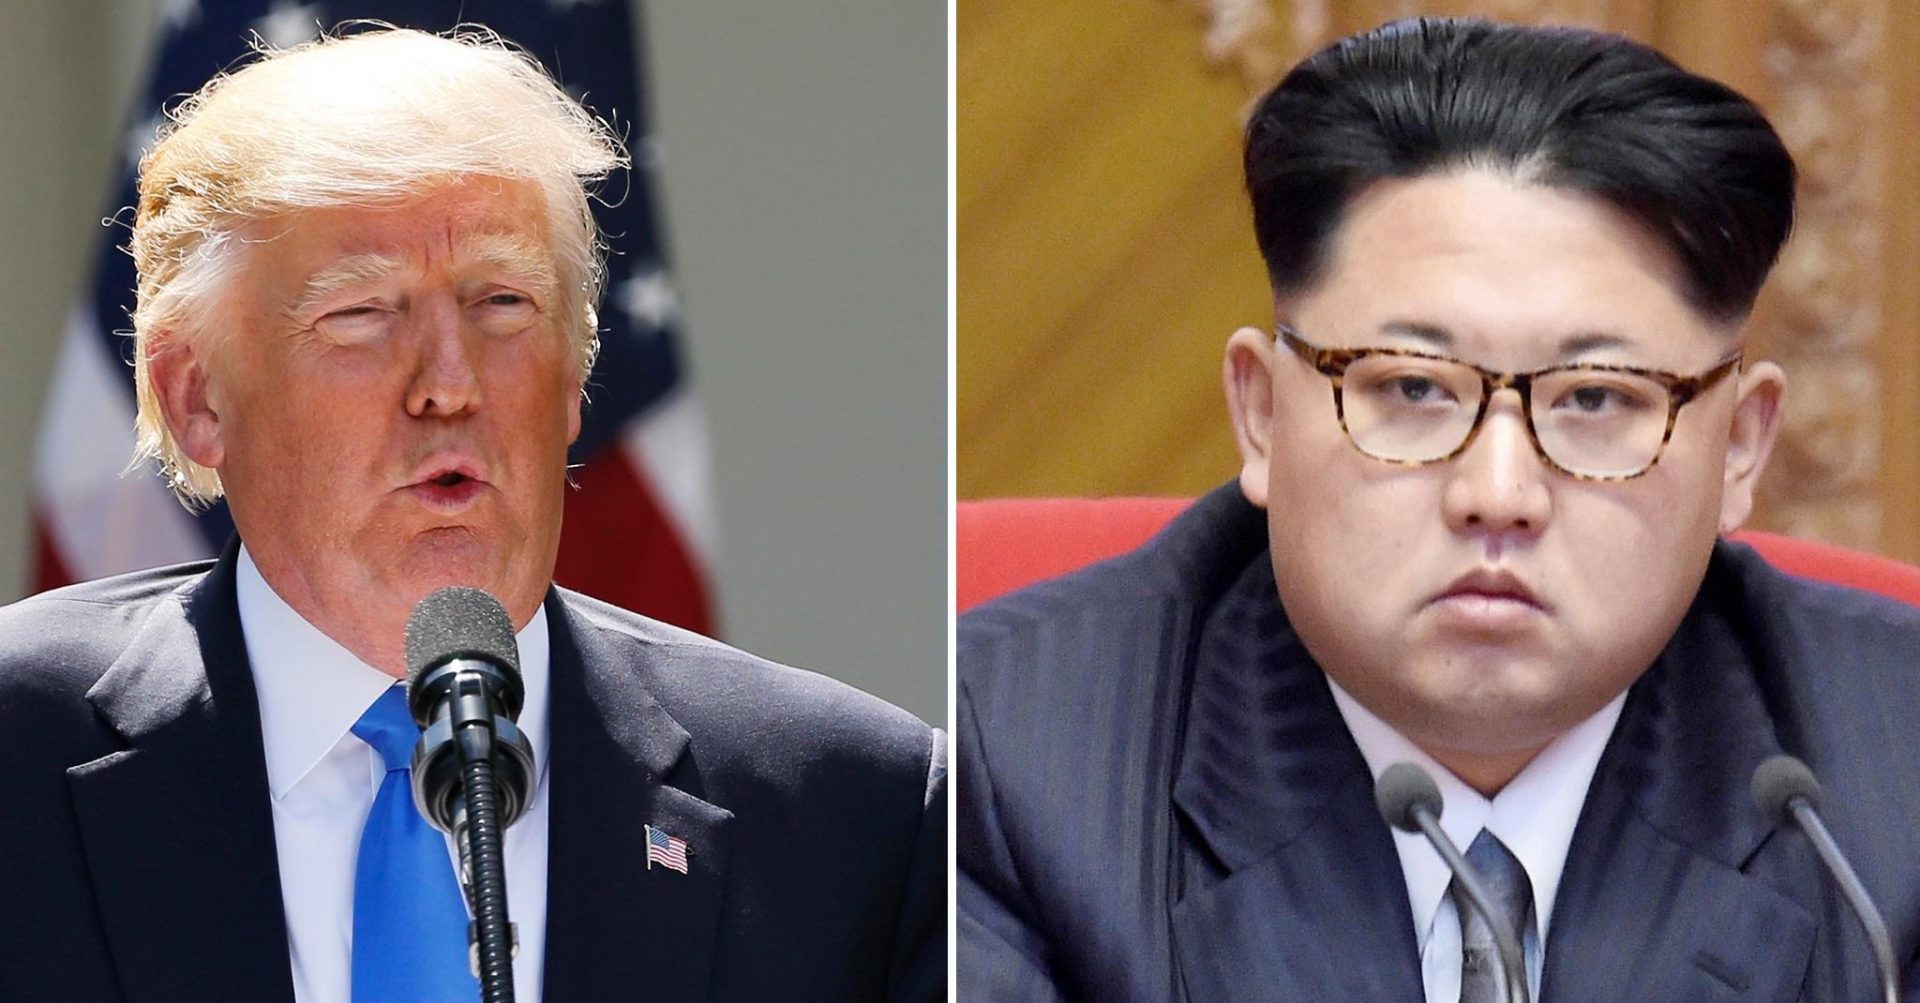 Le leader de la Corée du Nord, Kim Jong-un, a proposé une rencontre en personne avec le président américain Donald Trump, qui a accepté. (Source : The Independent)